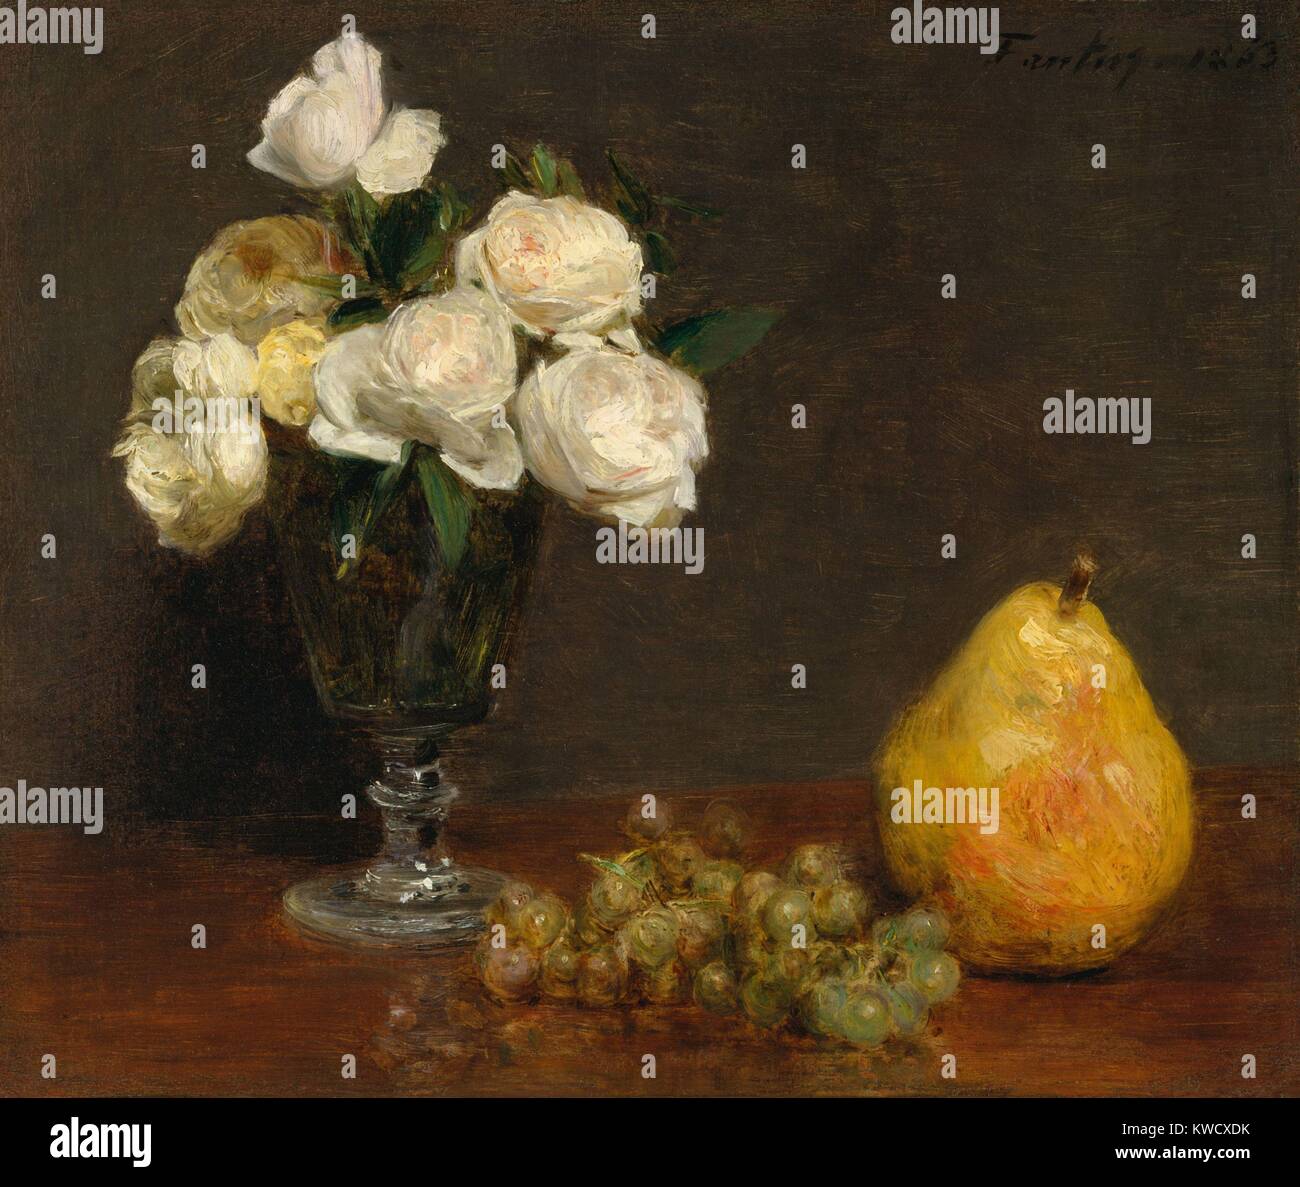 Nature morte avec roses et des fruits, par Henri Fantin-Latour, 1863, peinture à l'huile impressionnistes français. Fantin-Latour associés avec les impressionnistes, mais son style est resté conservateur composition tout au long de sa carrière artistique (BSLOC 2017 3 147) Banque D'Images